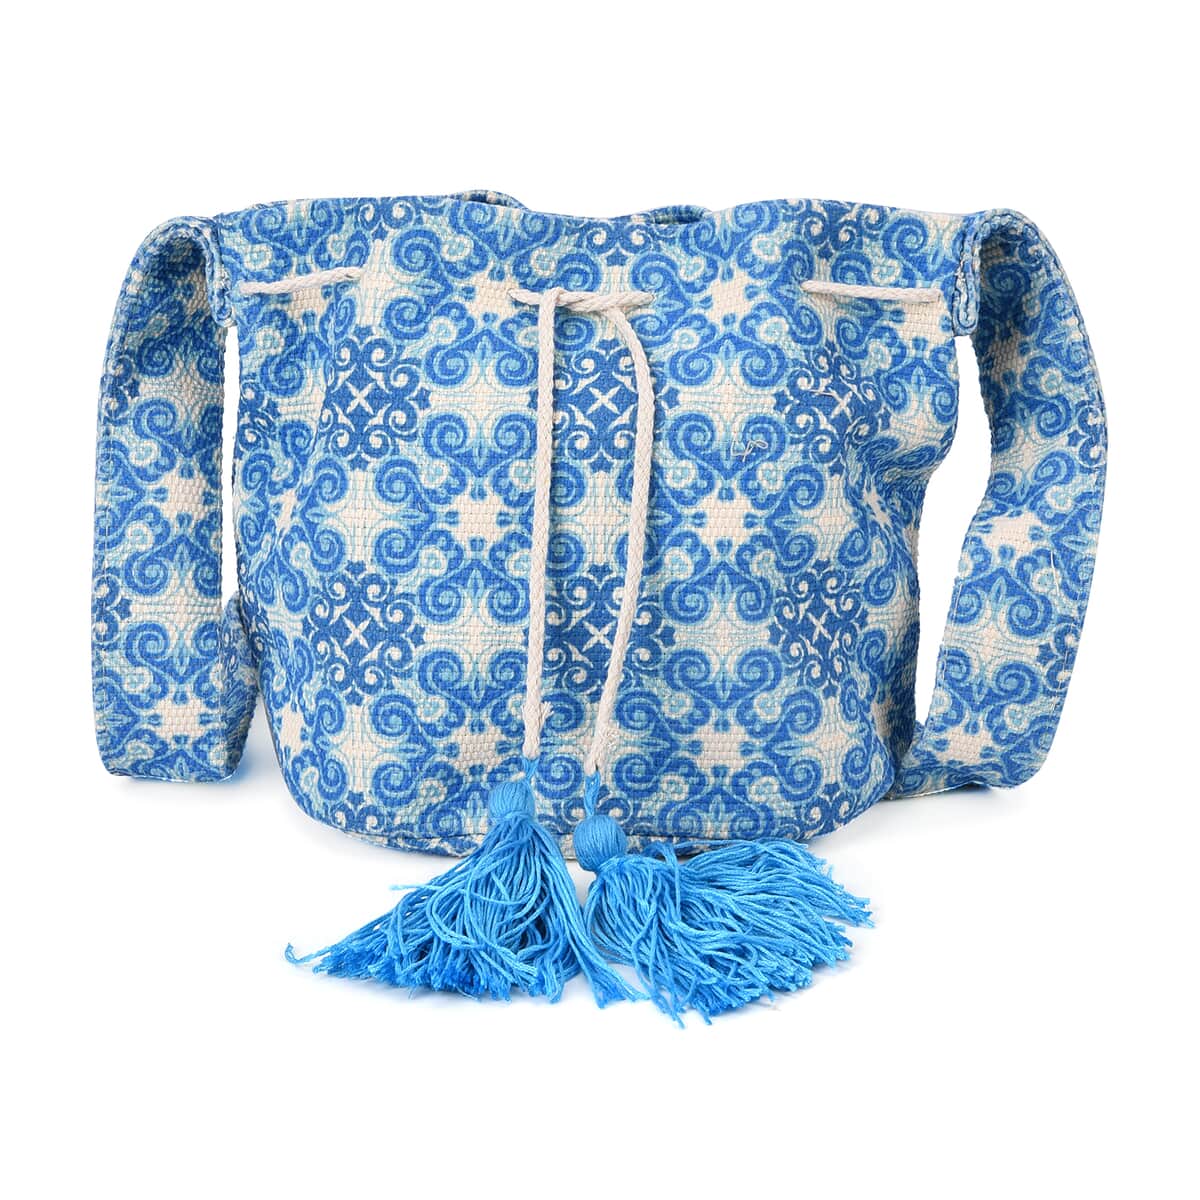 Blue Color Flower Pattern Crossbody Bag (9"x8.3"x6.7") with Blue Tassel and Shoulder Strap (59") image number 0